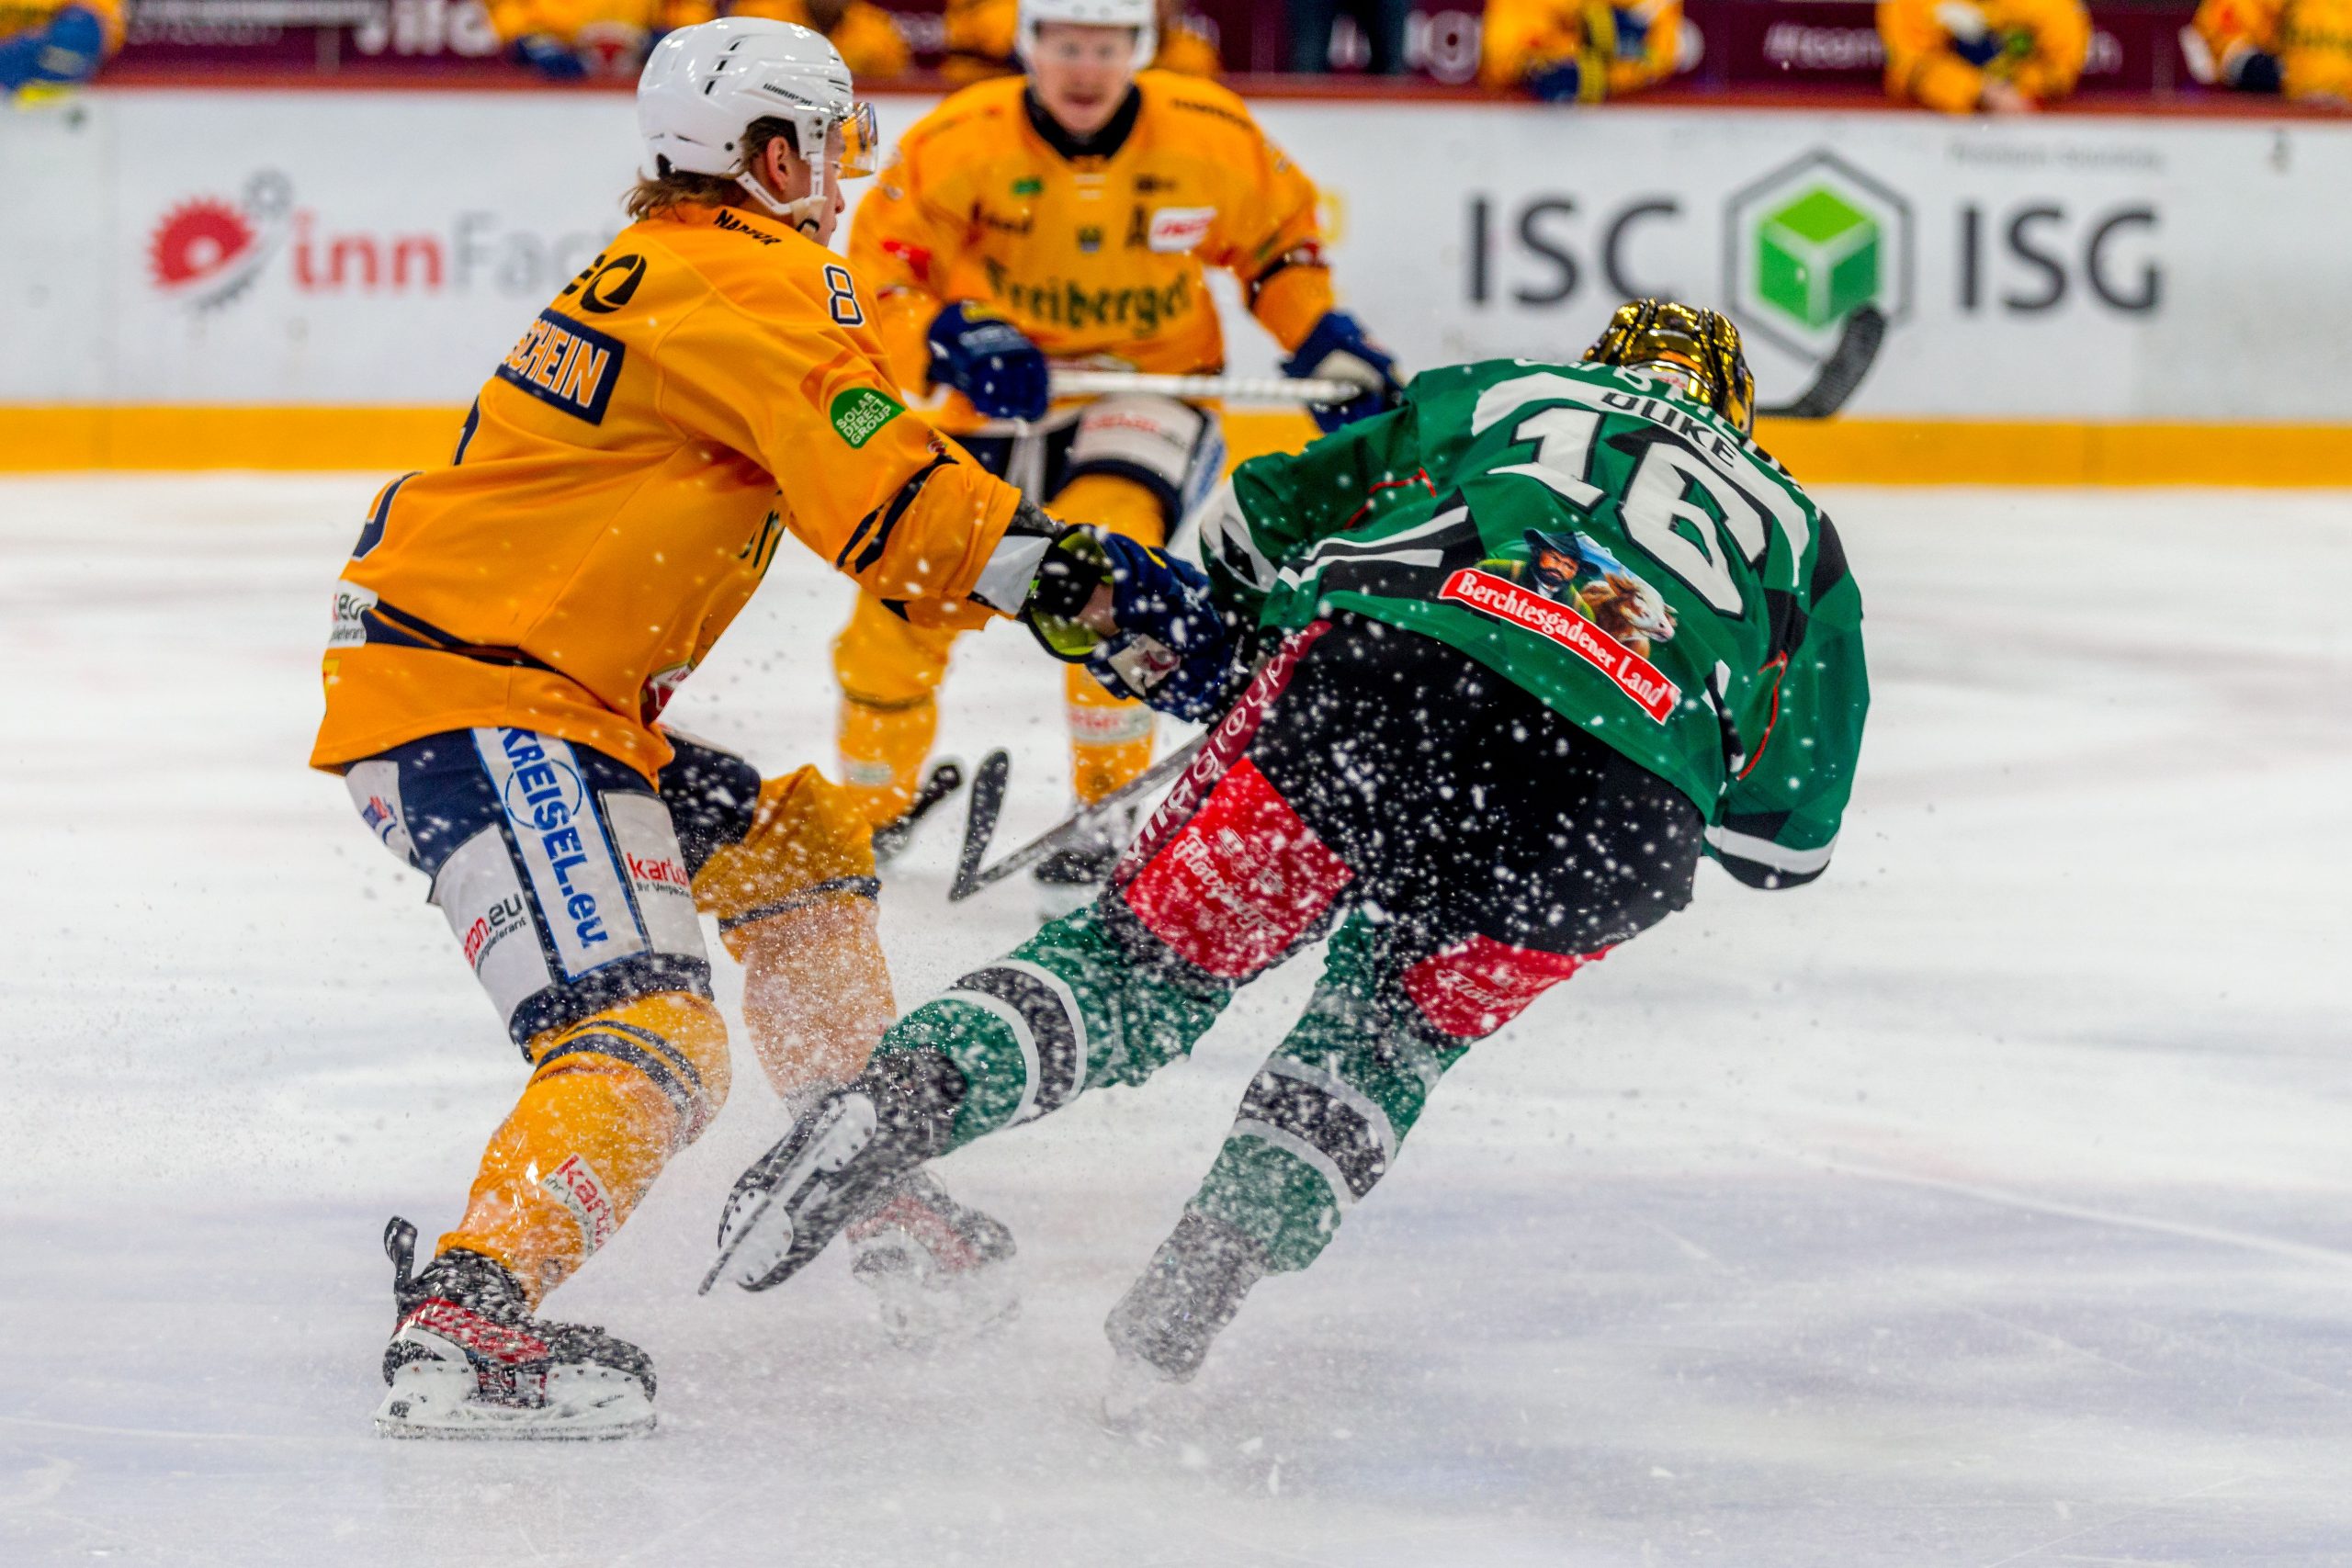 Eishockey Rosenheim gegen Weisswasser. Fotos: Copyright Ludwig Schirmer / Peter Lion